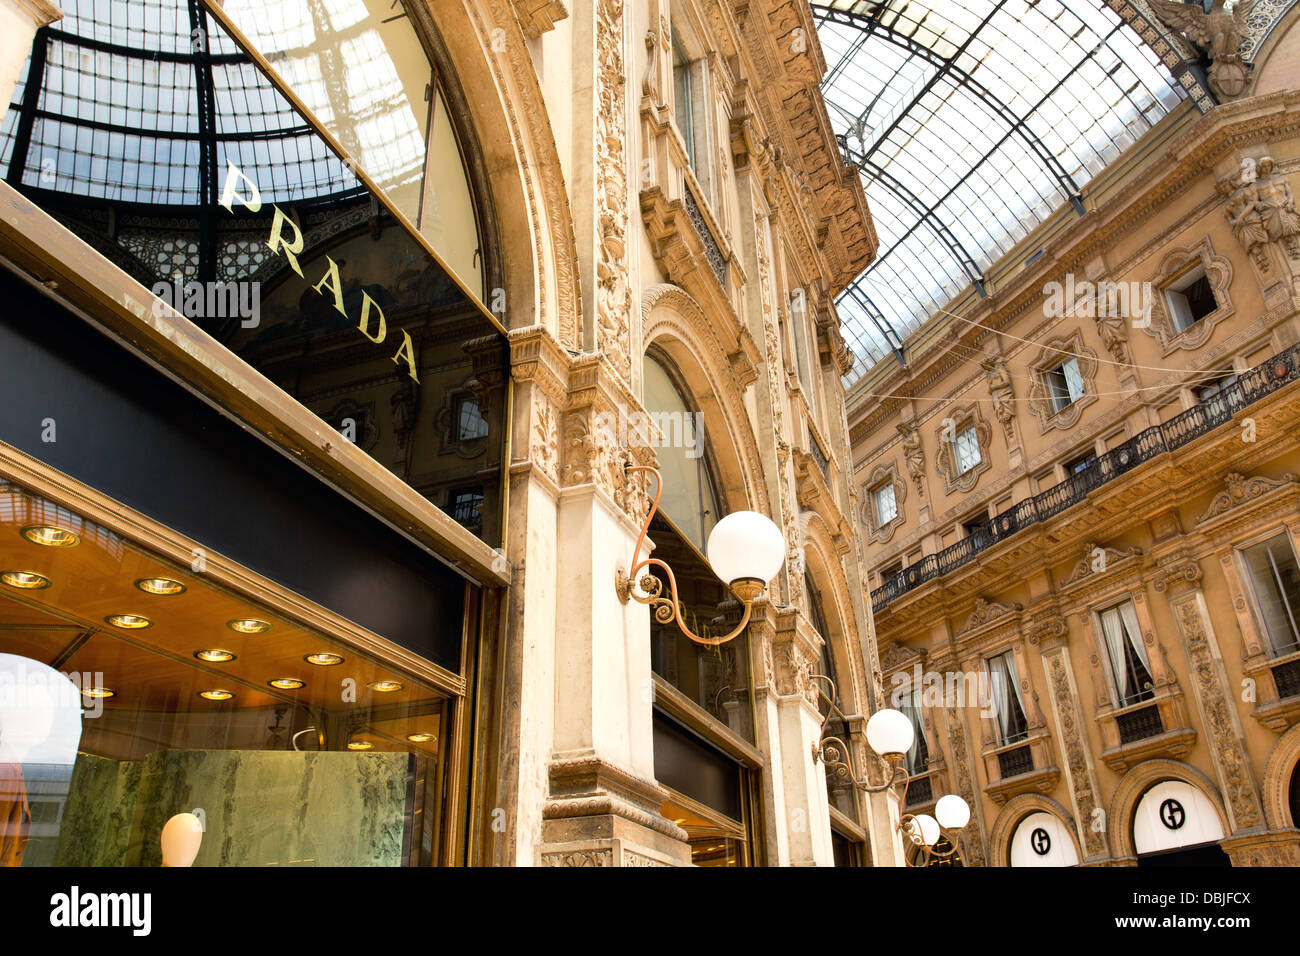 Le magasin Prada à la Galleria Vittorio Emanuele 11, à Milan. Banque D'Images